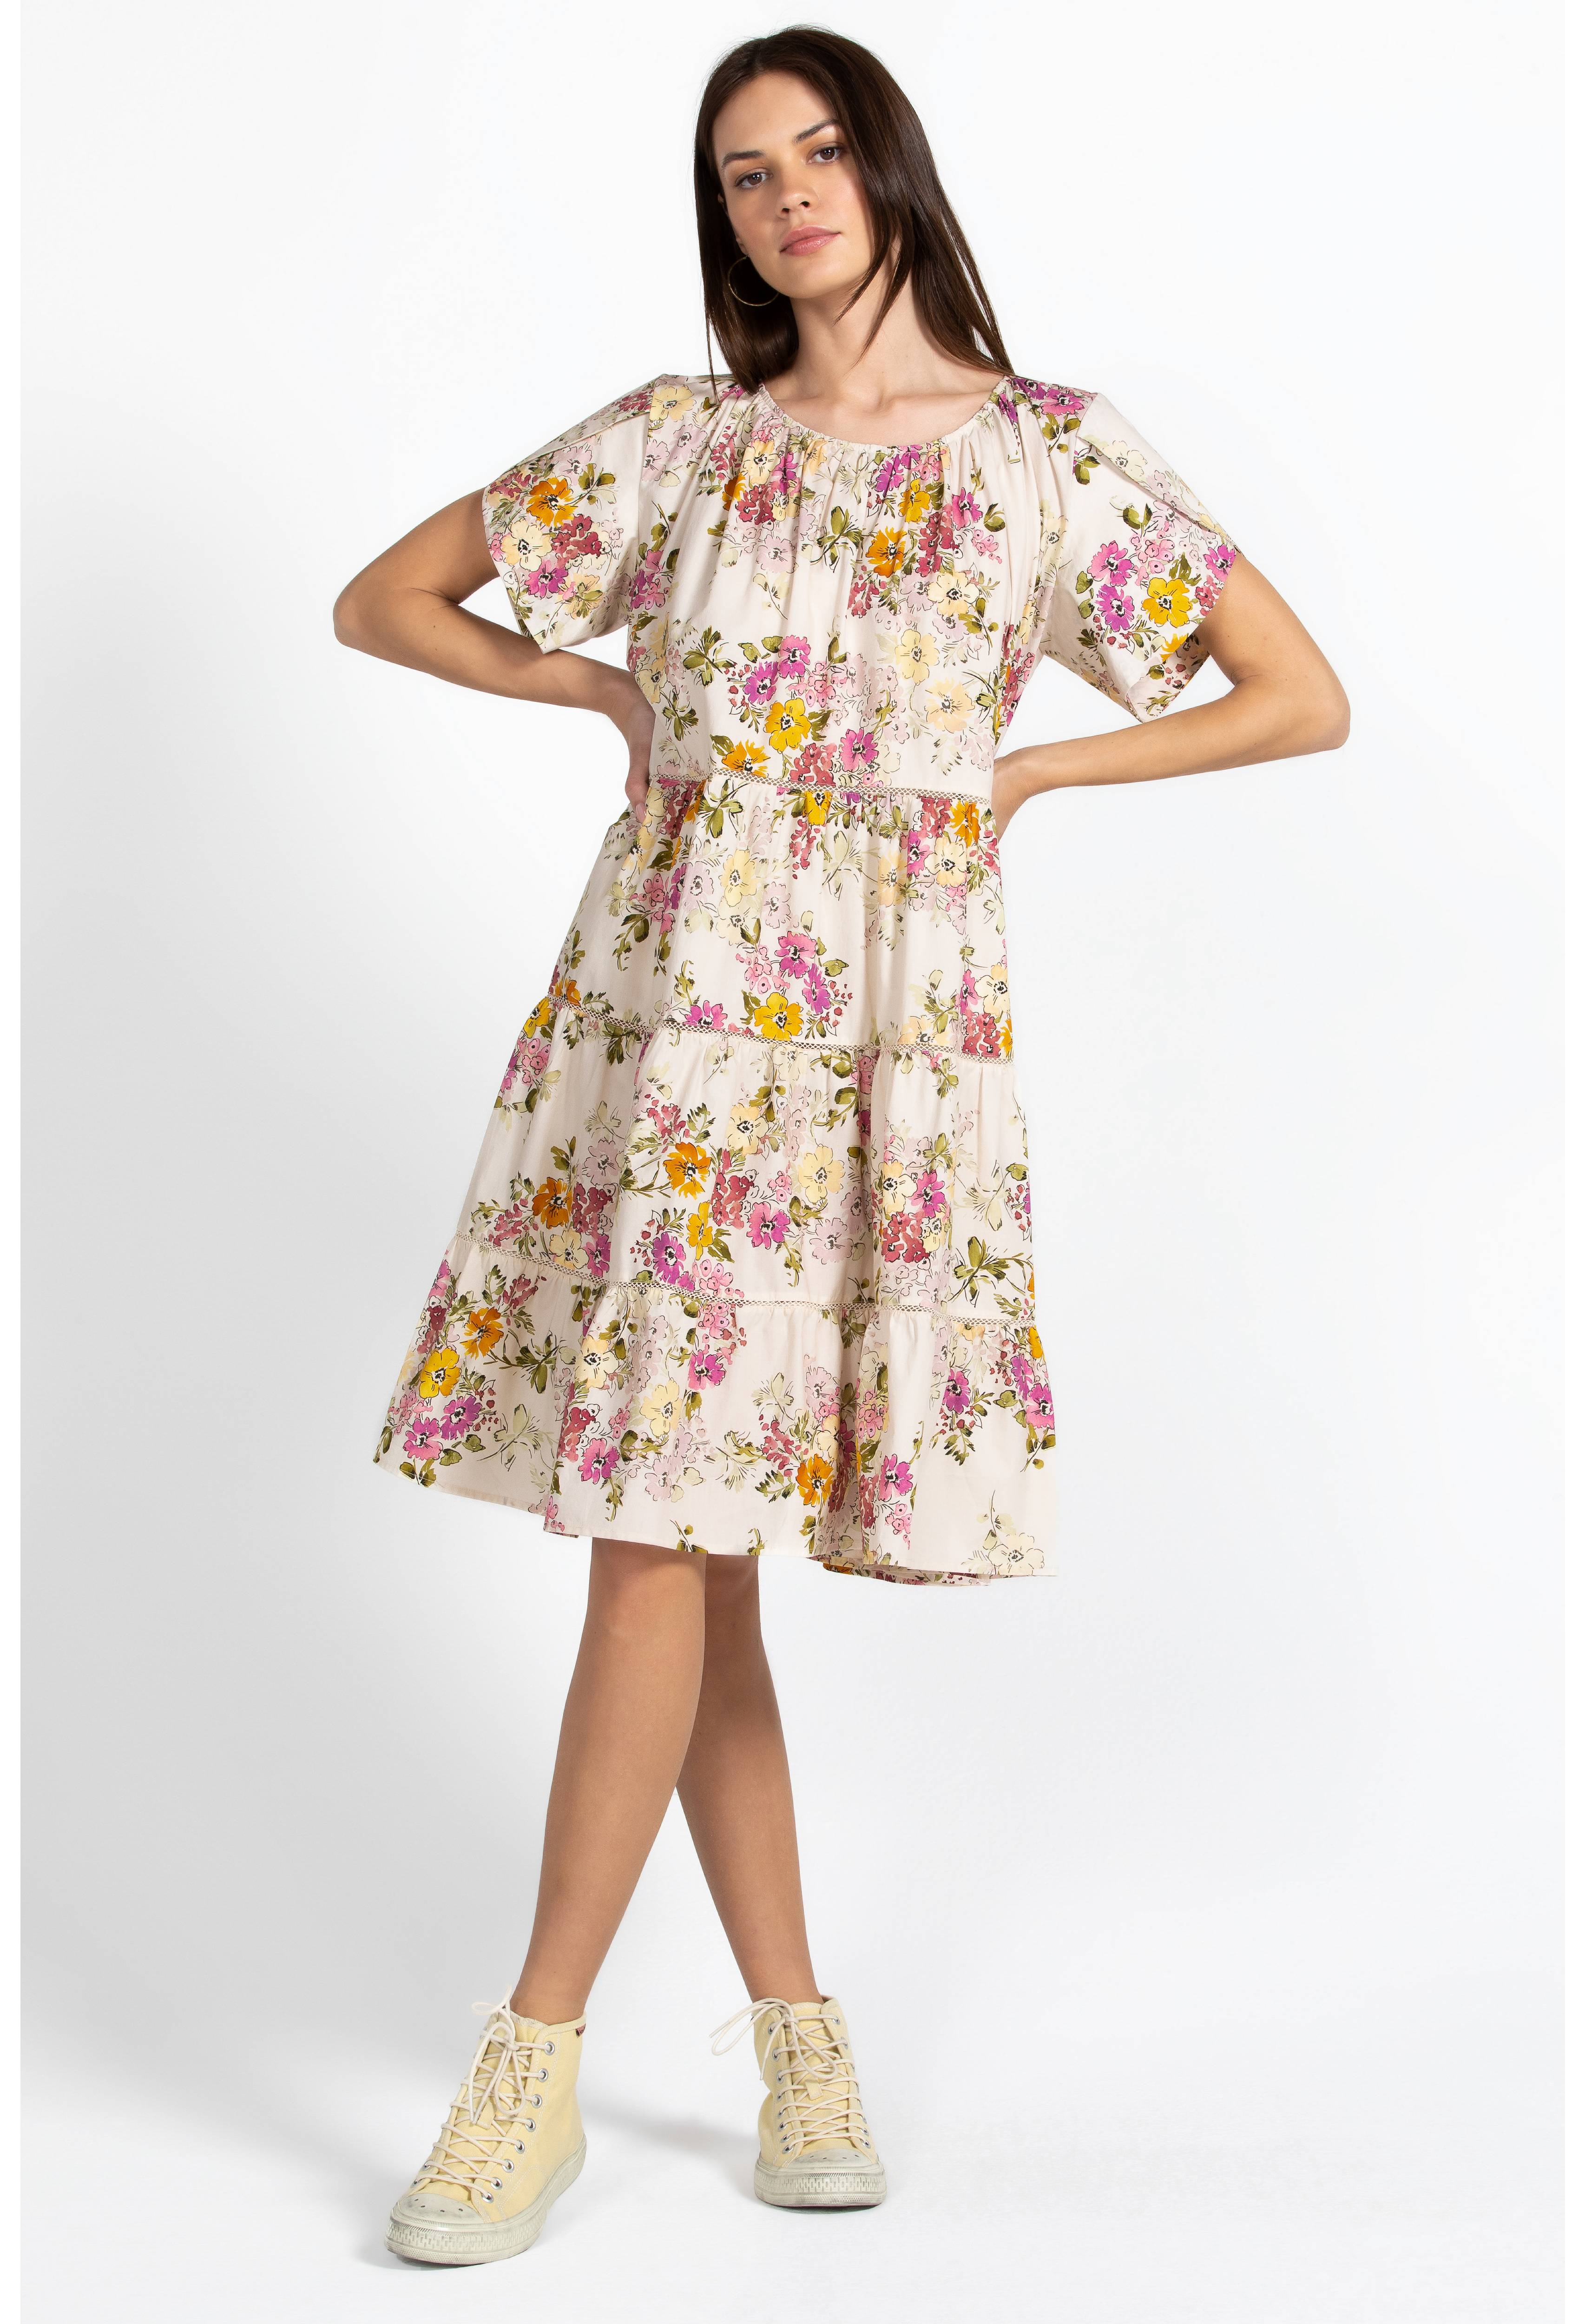 Magnolia Tiered Mini Dress, , large image number 3